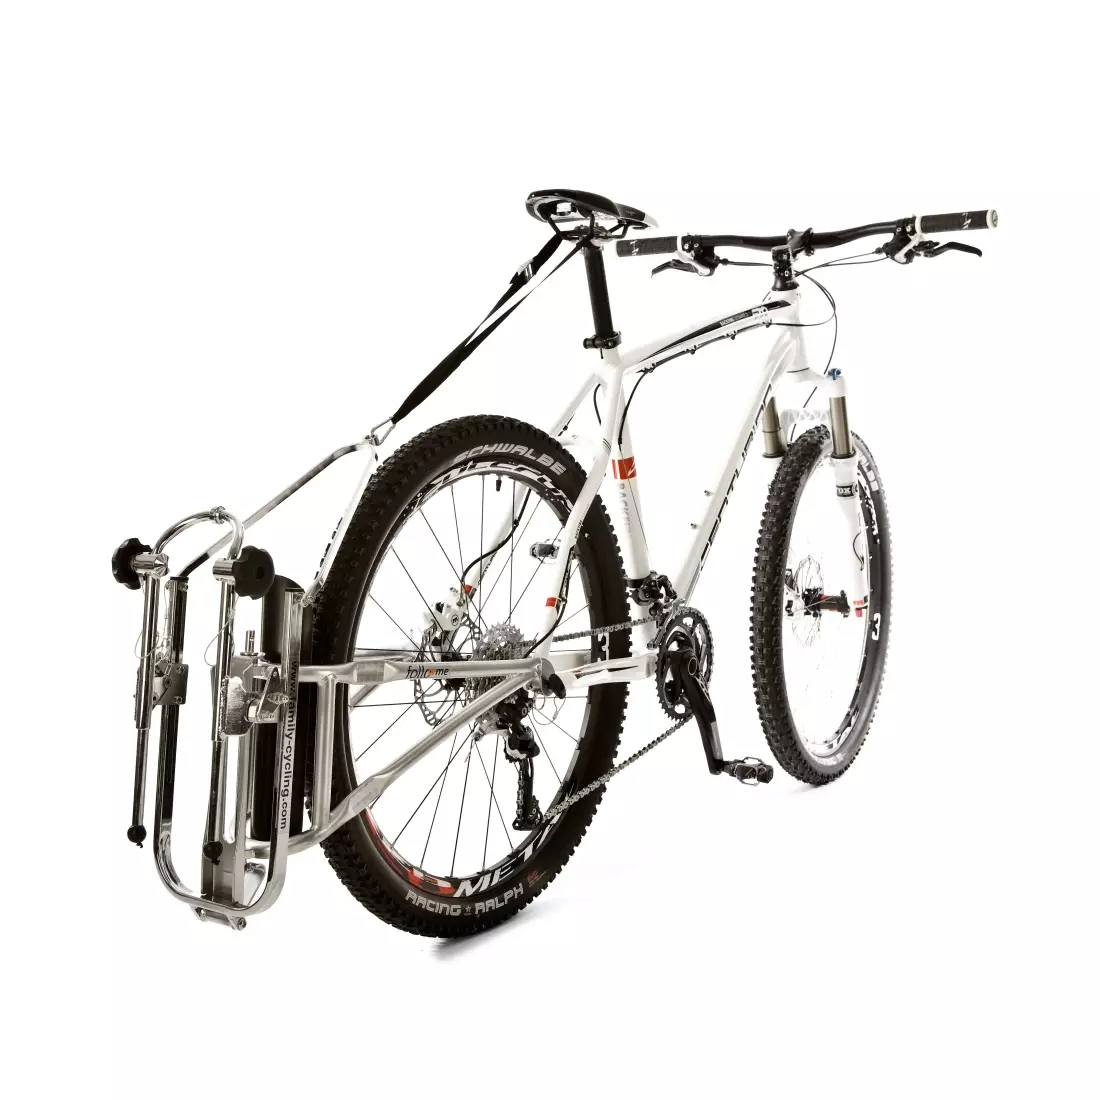 FOLLOWME kompletné ťažné zariadenie na bicykel s rýchloupínačom  FM-100.000